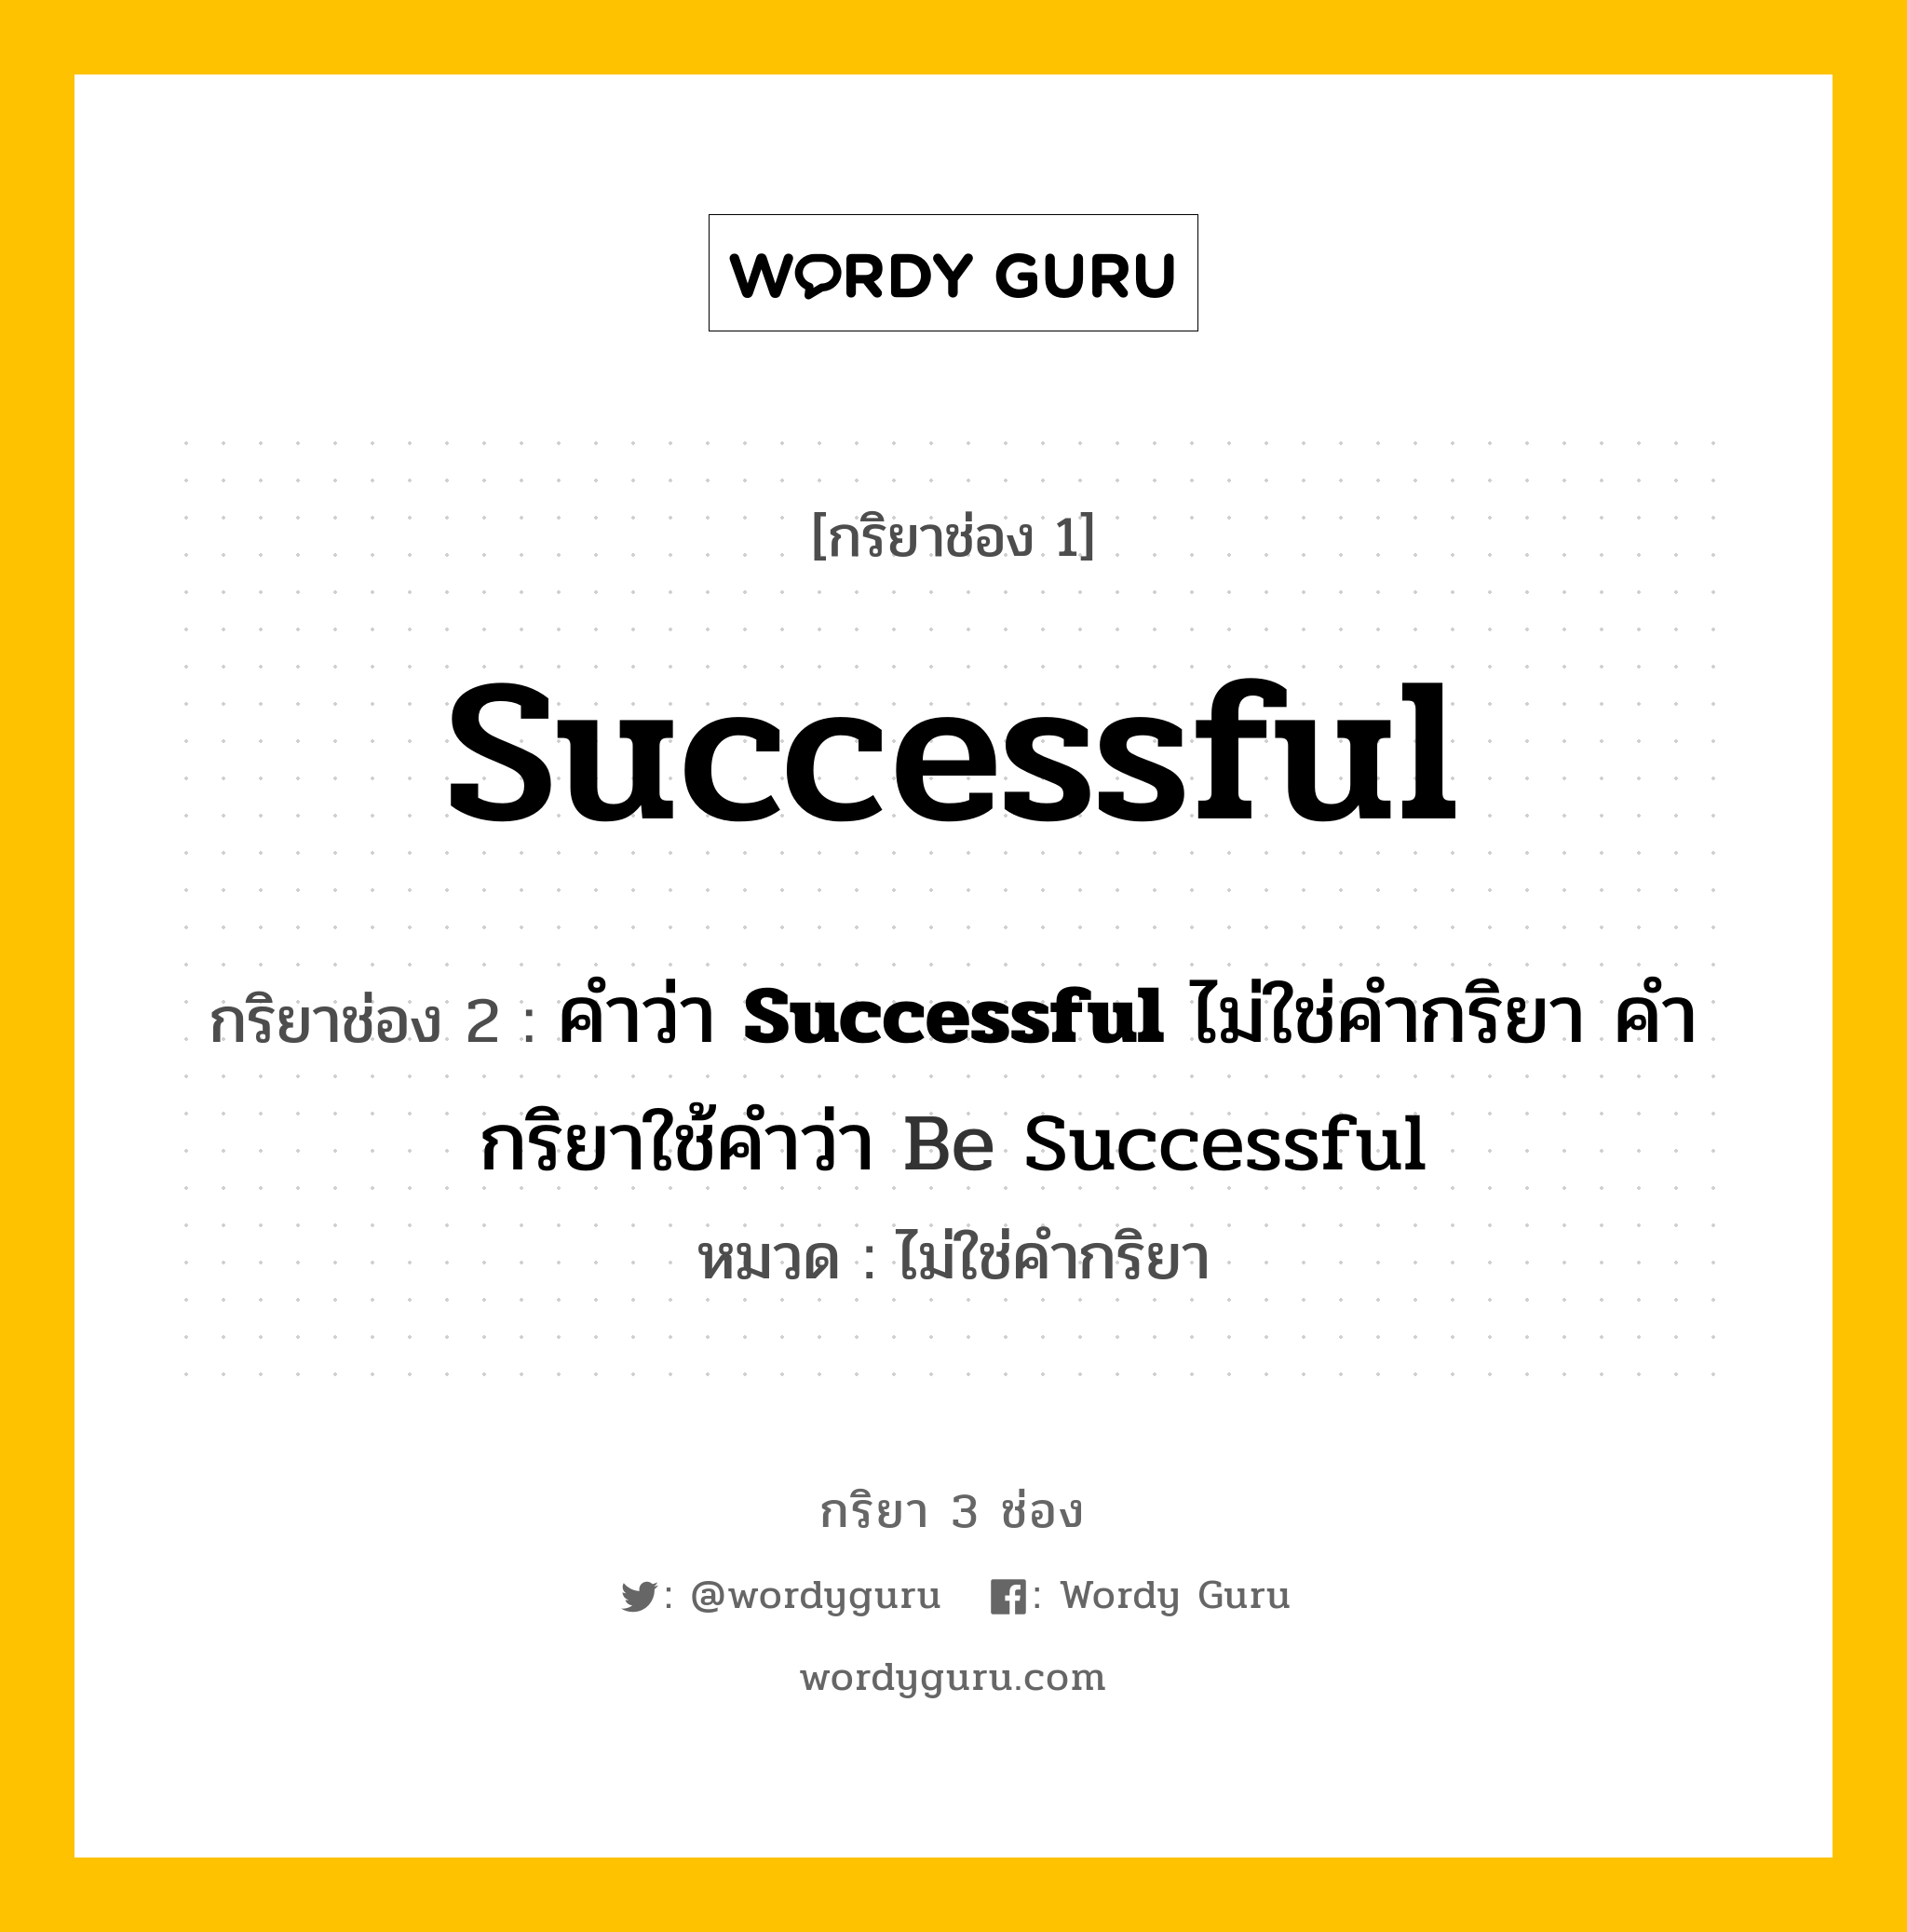 กริยา 3 ช่อง: Successful ช่อง 2 Successful ช่อง 3 คืออะไร, กริยาช่อง 1 Successful กริยาช่อง 2 คำว่า <b>Successful</b> ไม่ใช่คำกริยา คำกริยาใช้คำว่า Be Successful หมวด ไม่ใช่คำกริยา หมวด ไม่ใช่คำกริยา